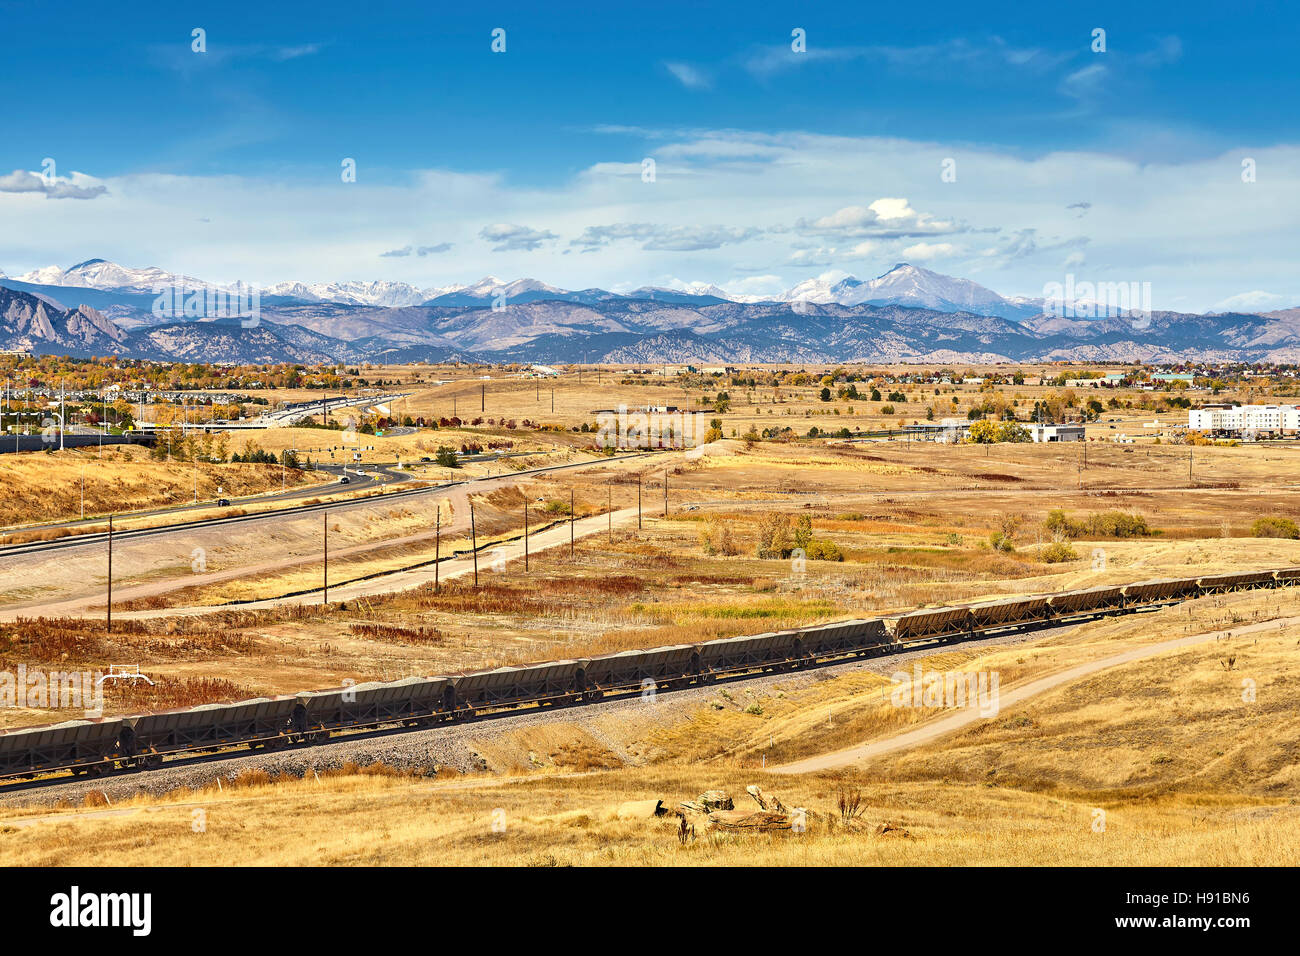 Otoño paisaje rural con tren de carga y la distancia de las Montañas Rocosas, Colorado, Estados Unidos. Foto de stock